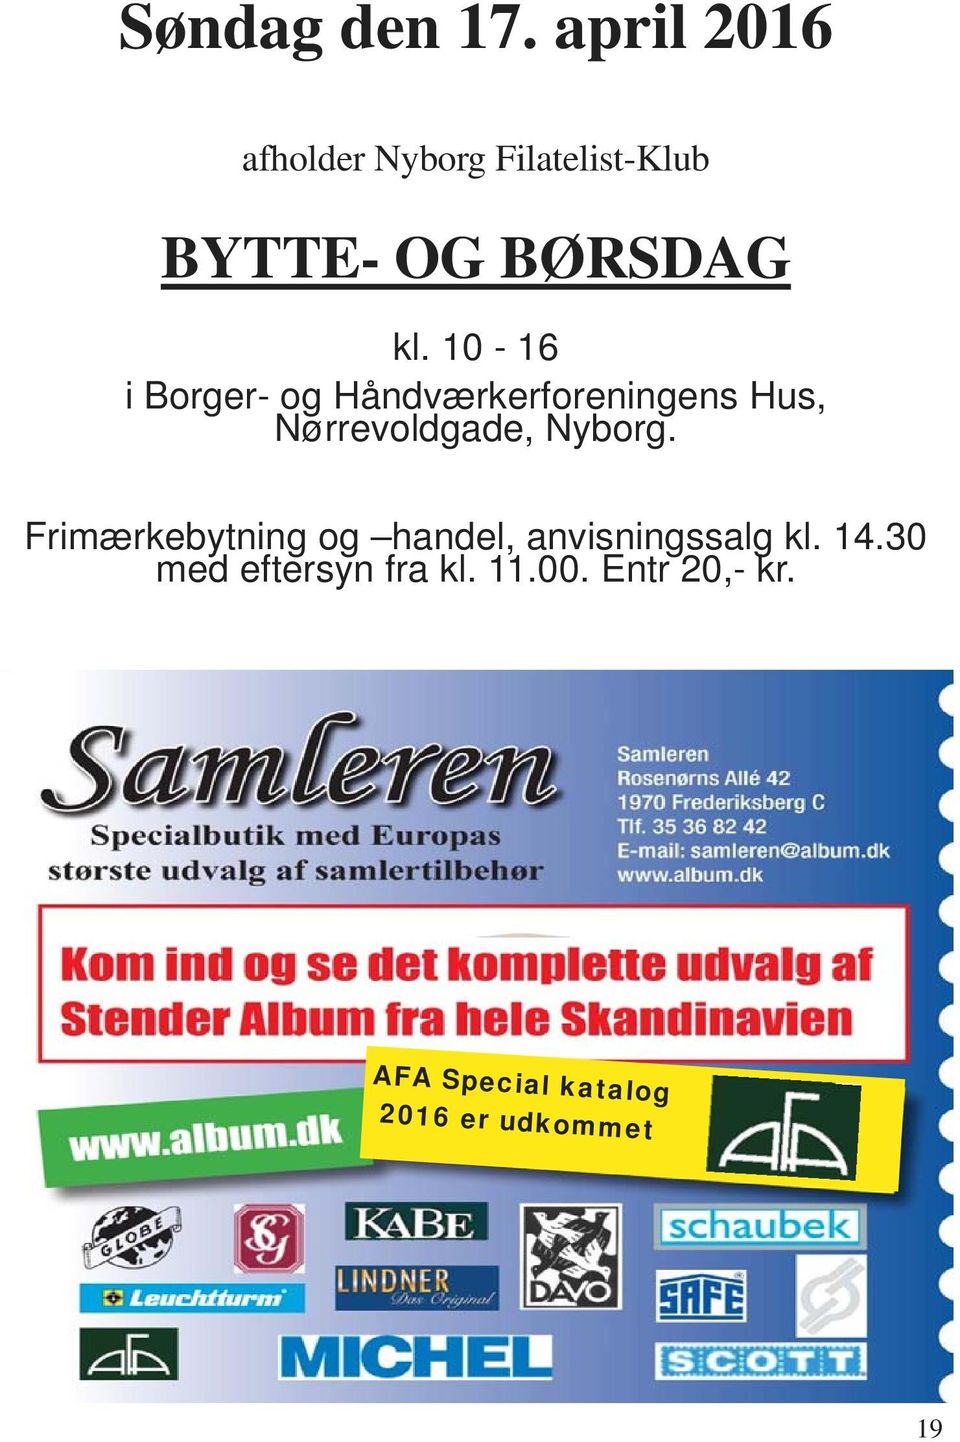 10-16 i Borger- og Håndværkerforeningens Hus, Nørrevoldgade, Nyborg.